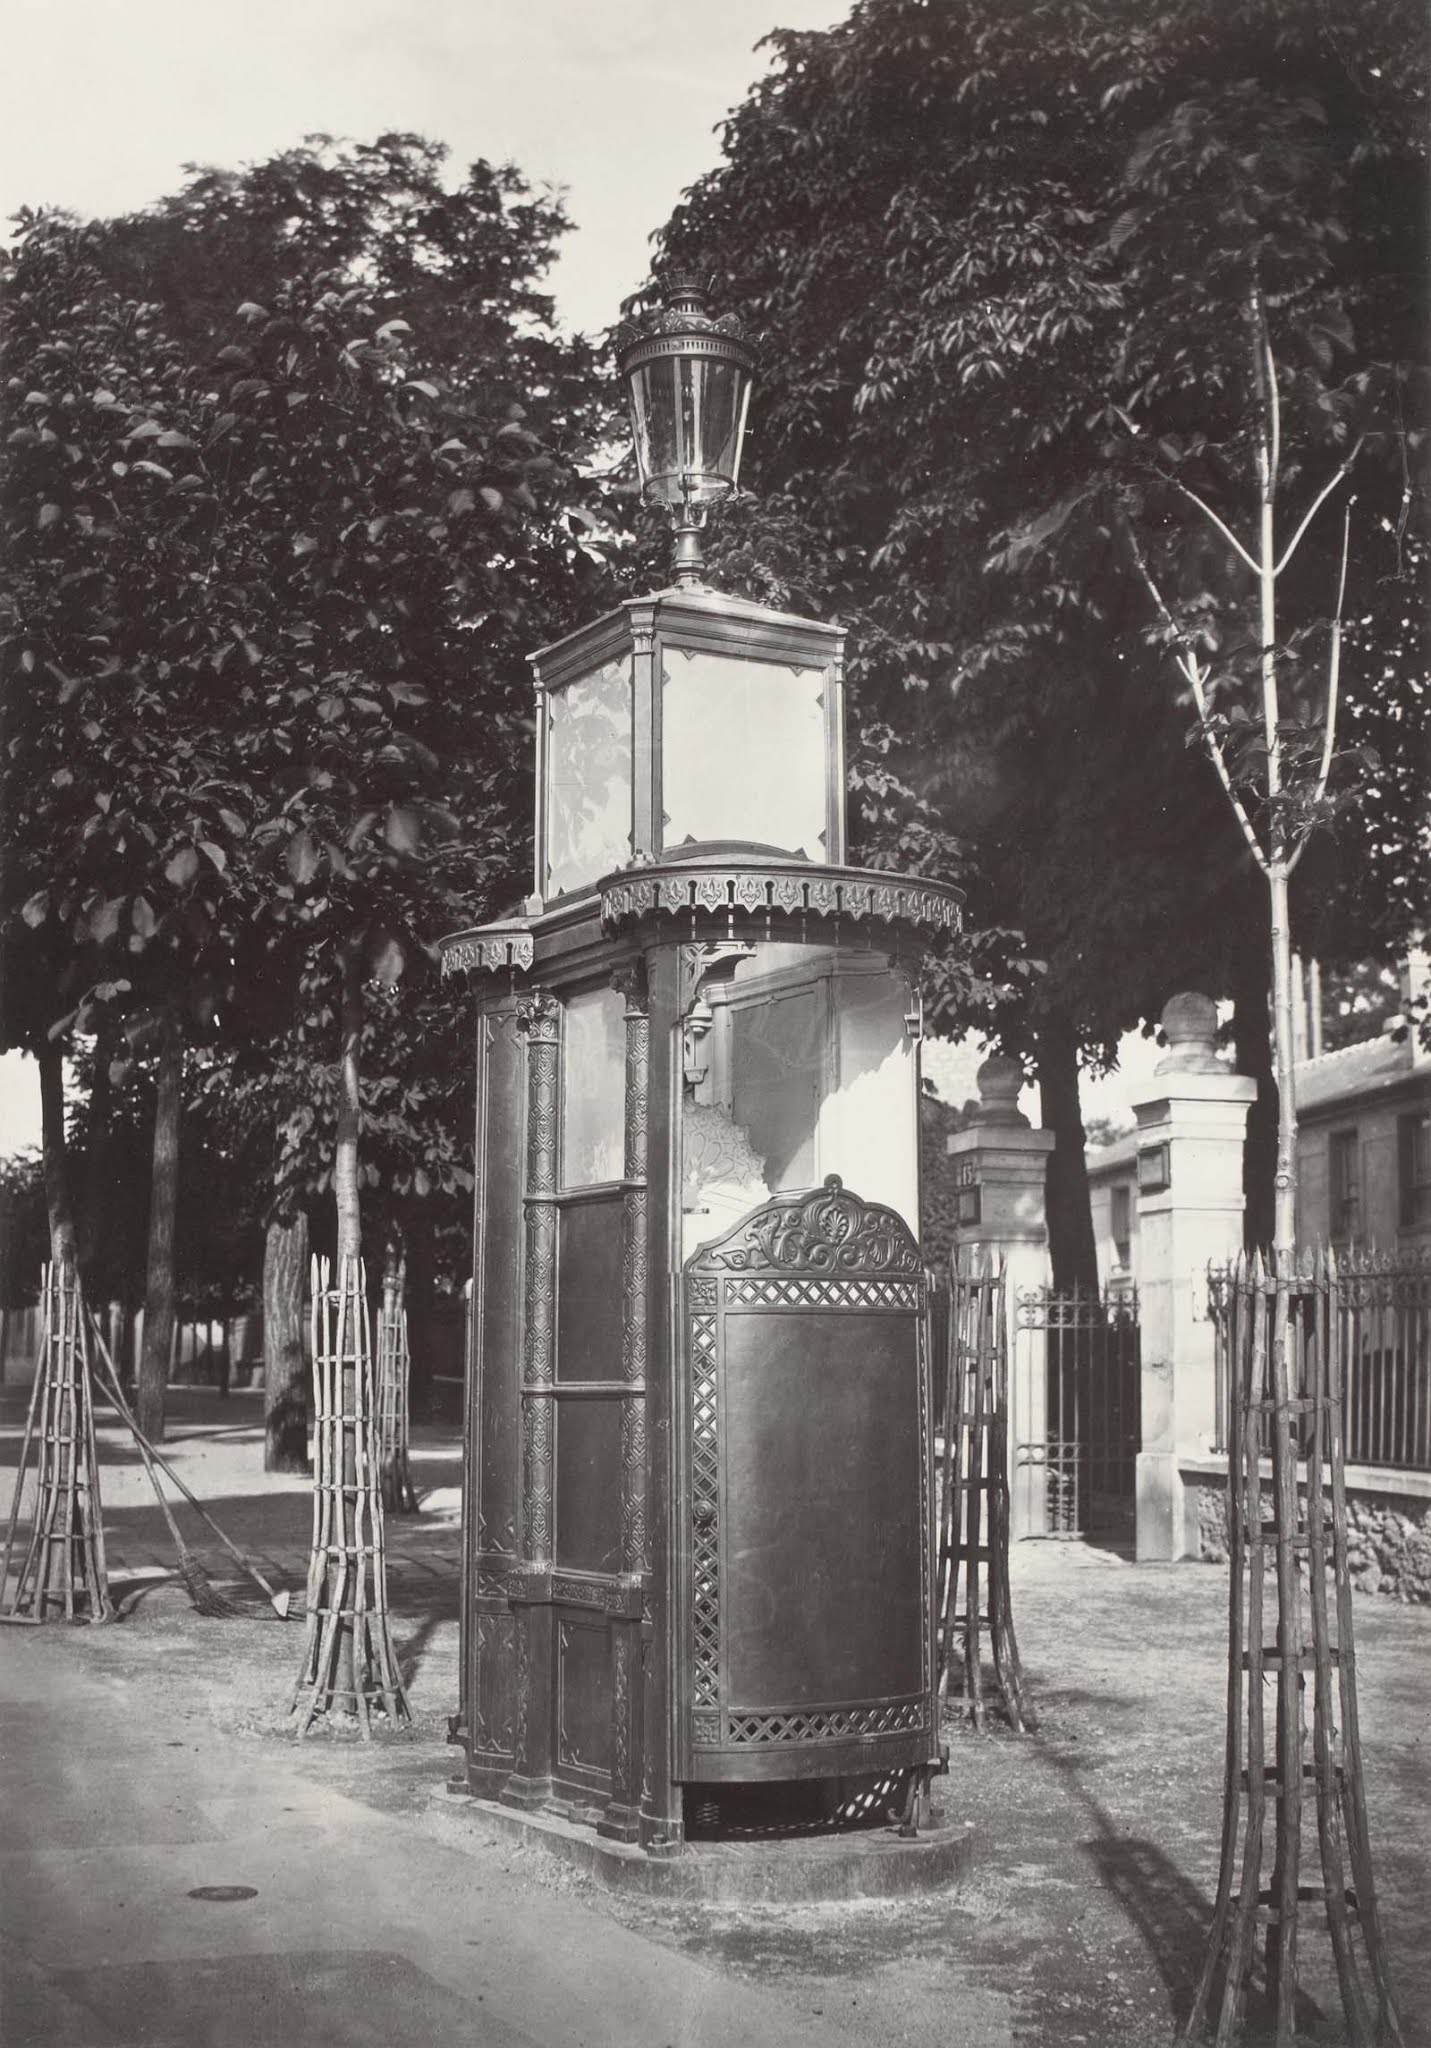 pissoir vintage public urinals paris